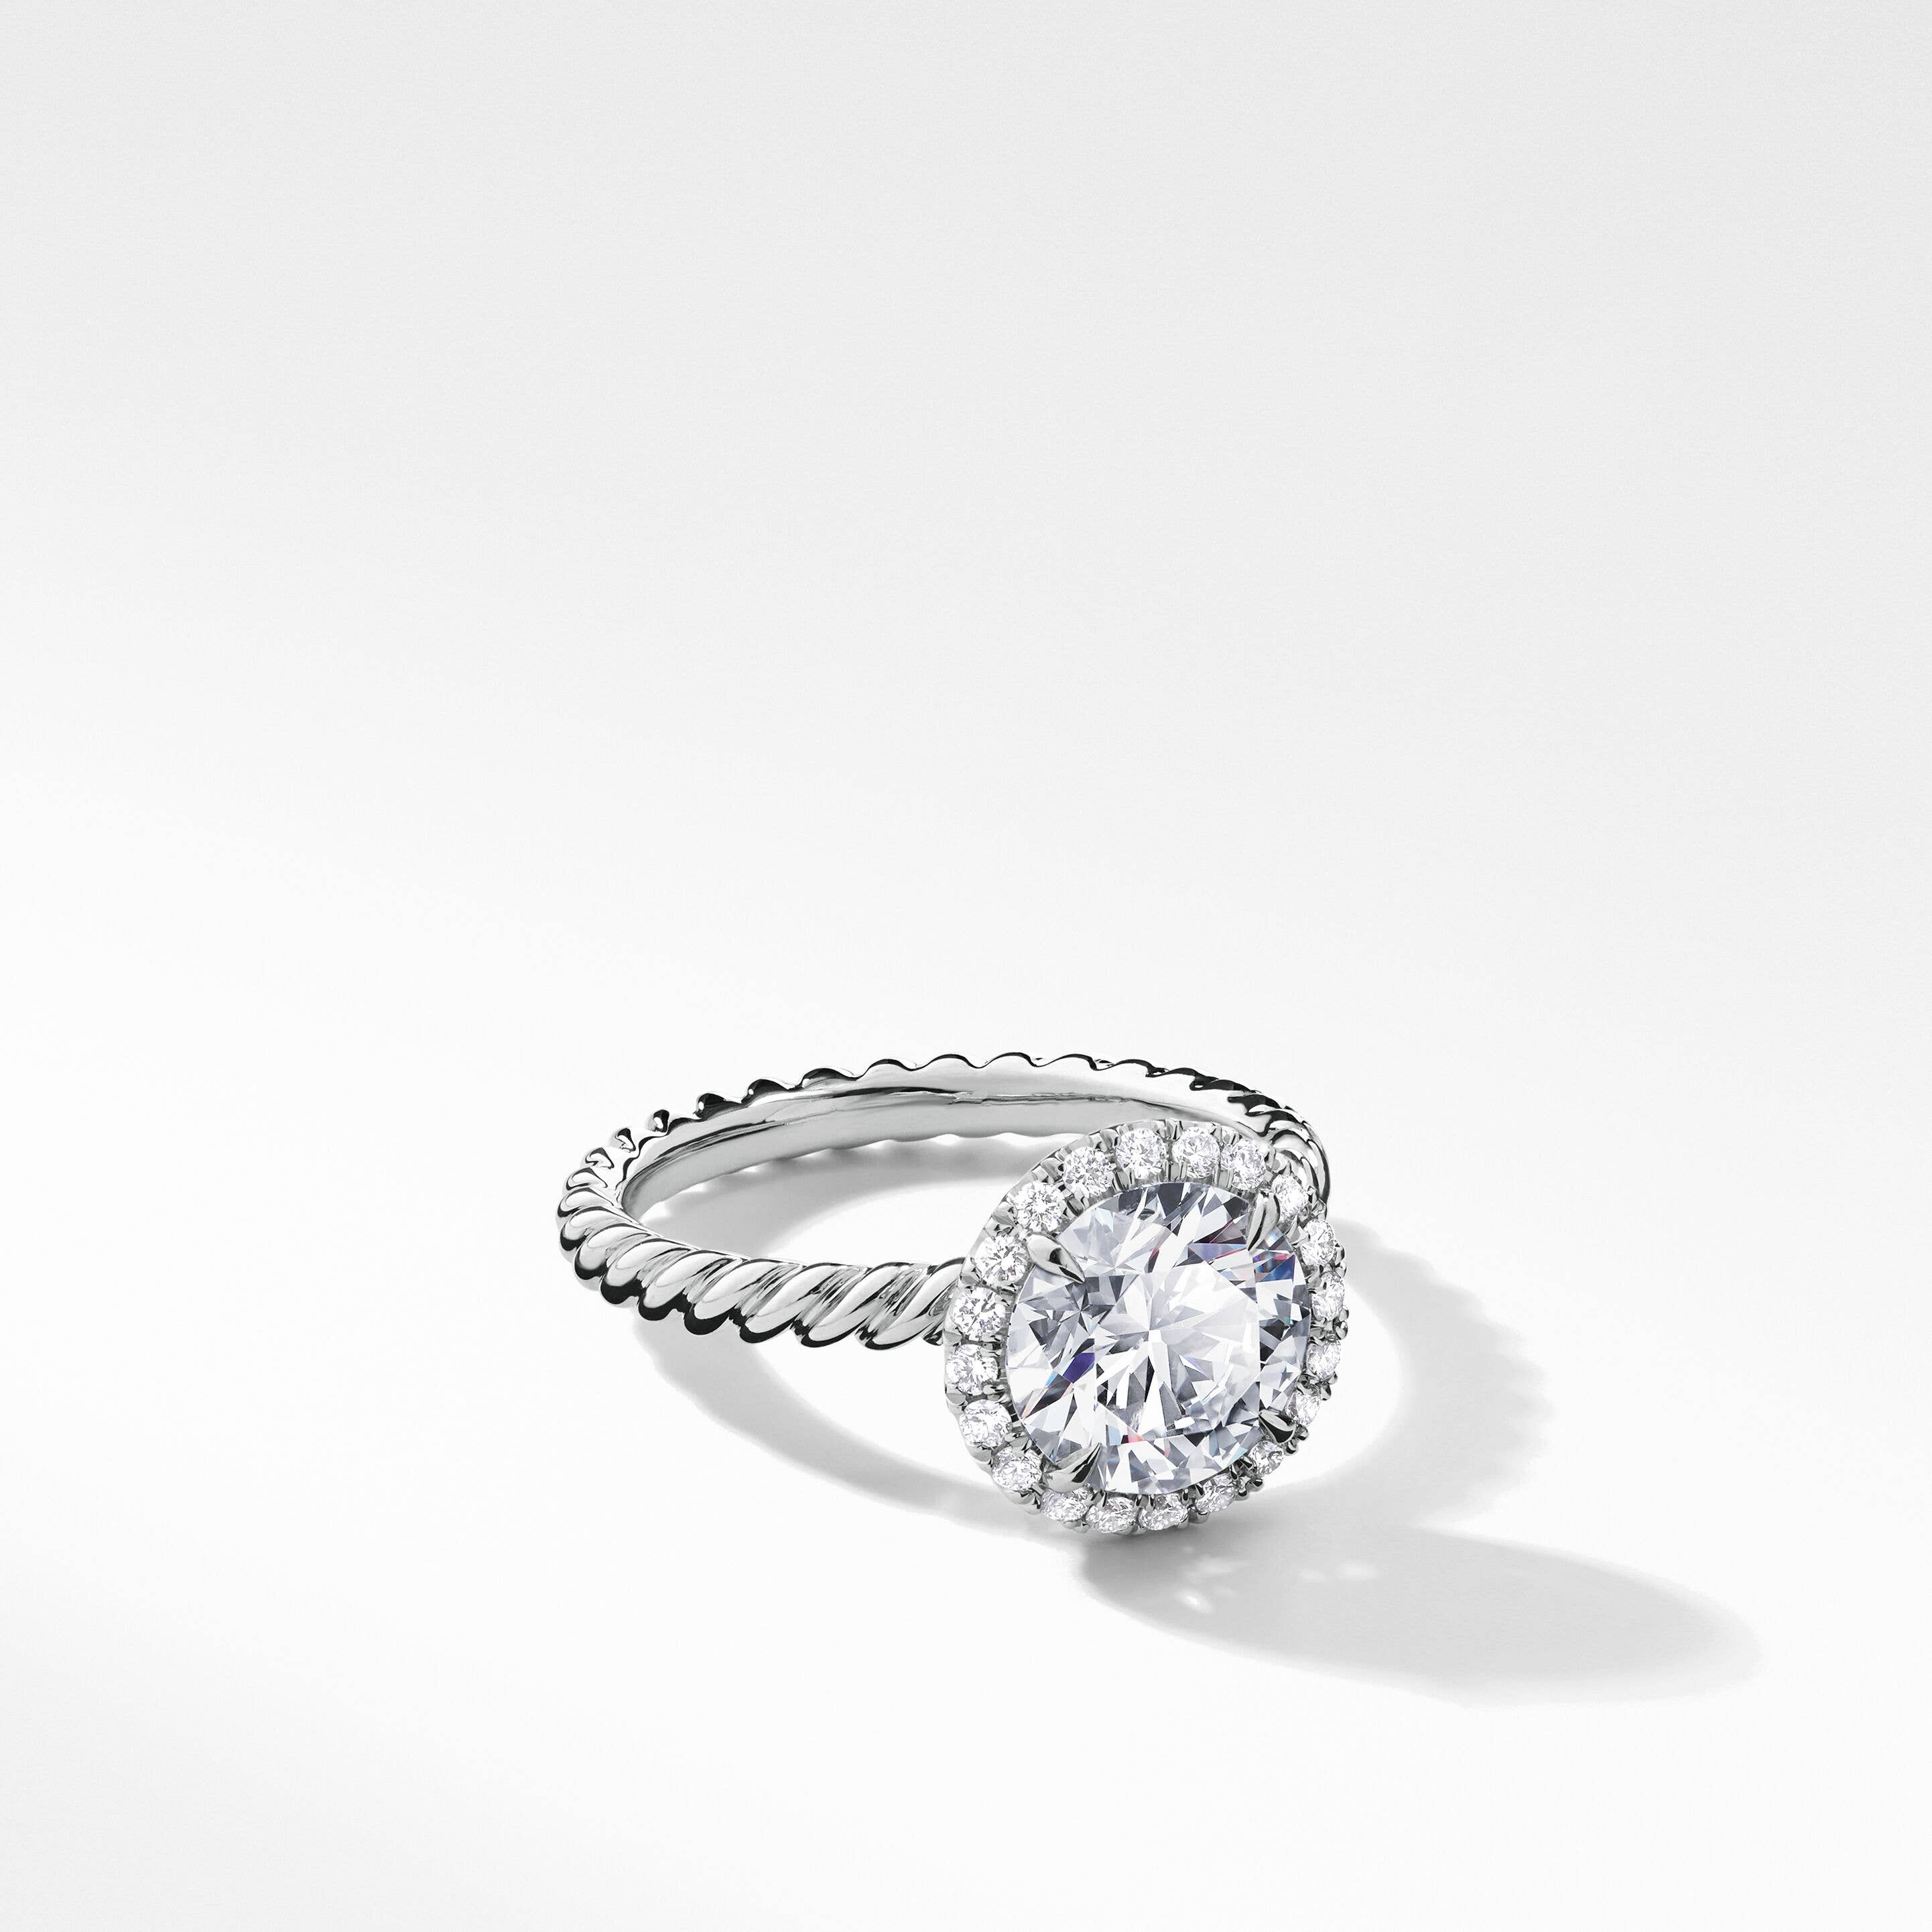 DY Capri Engagement Ring in Platinum, Round